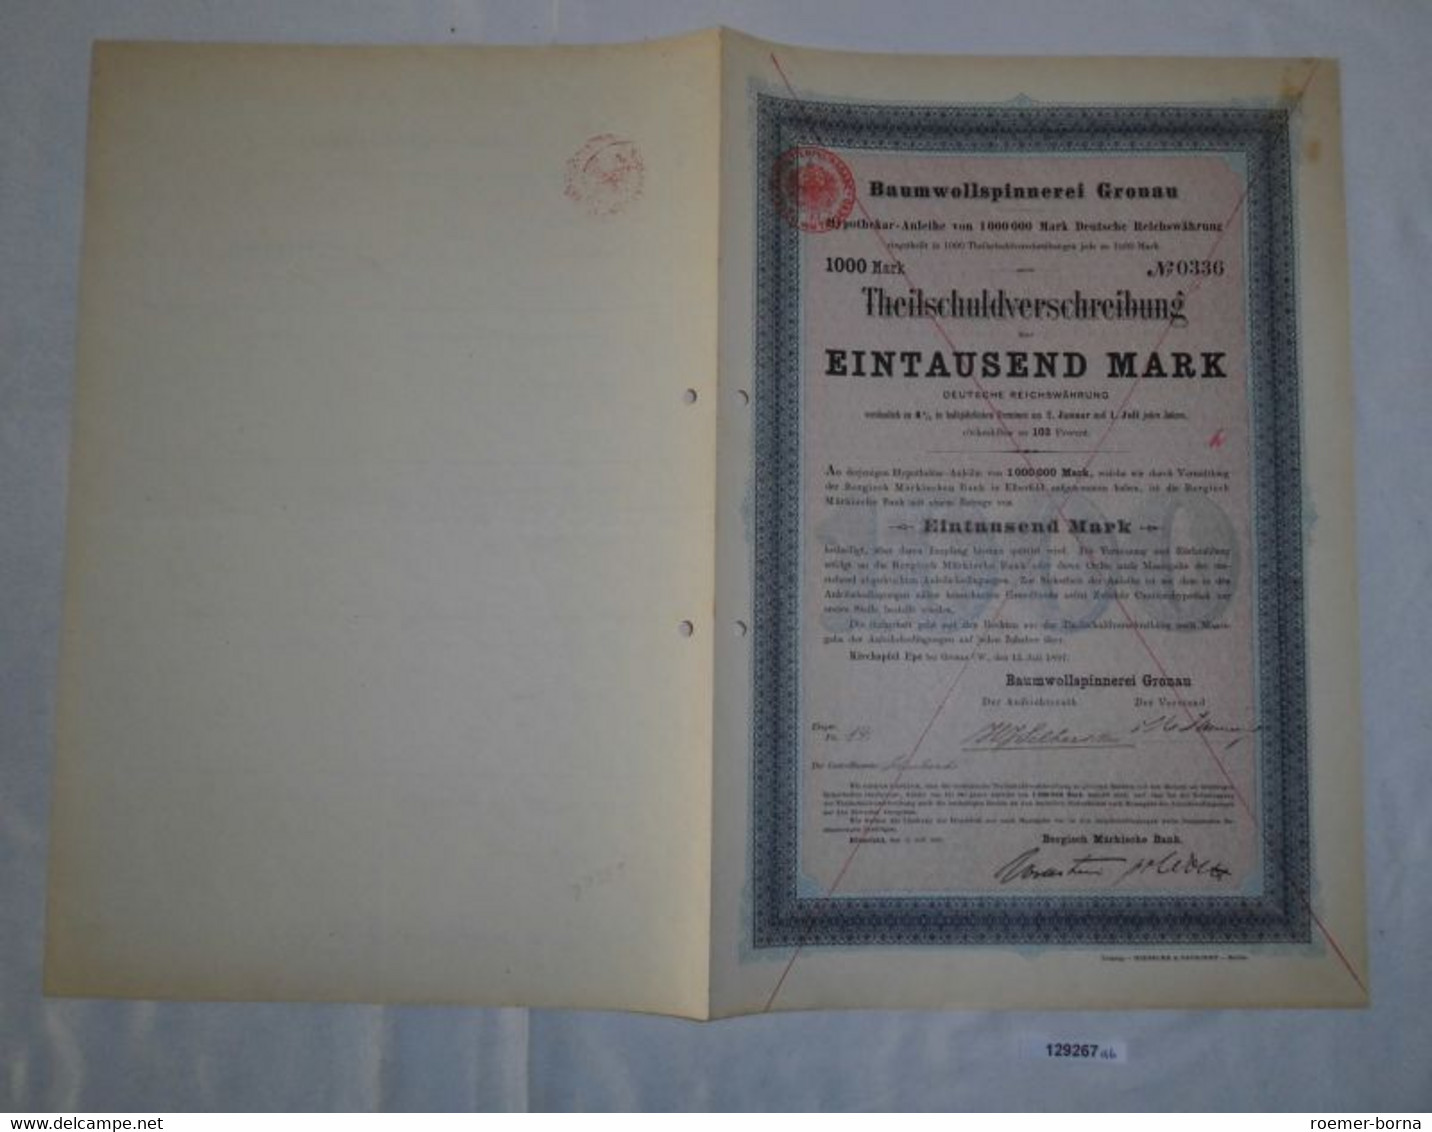 1000 Mark Teilschuldverschreibung Baumwollspinnerei Gronau 15.Juli 1897 (129267) - Textile